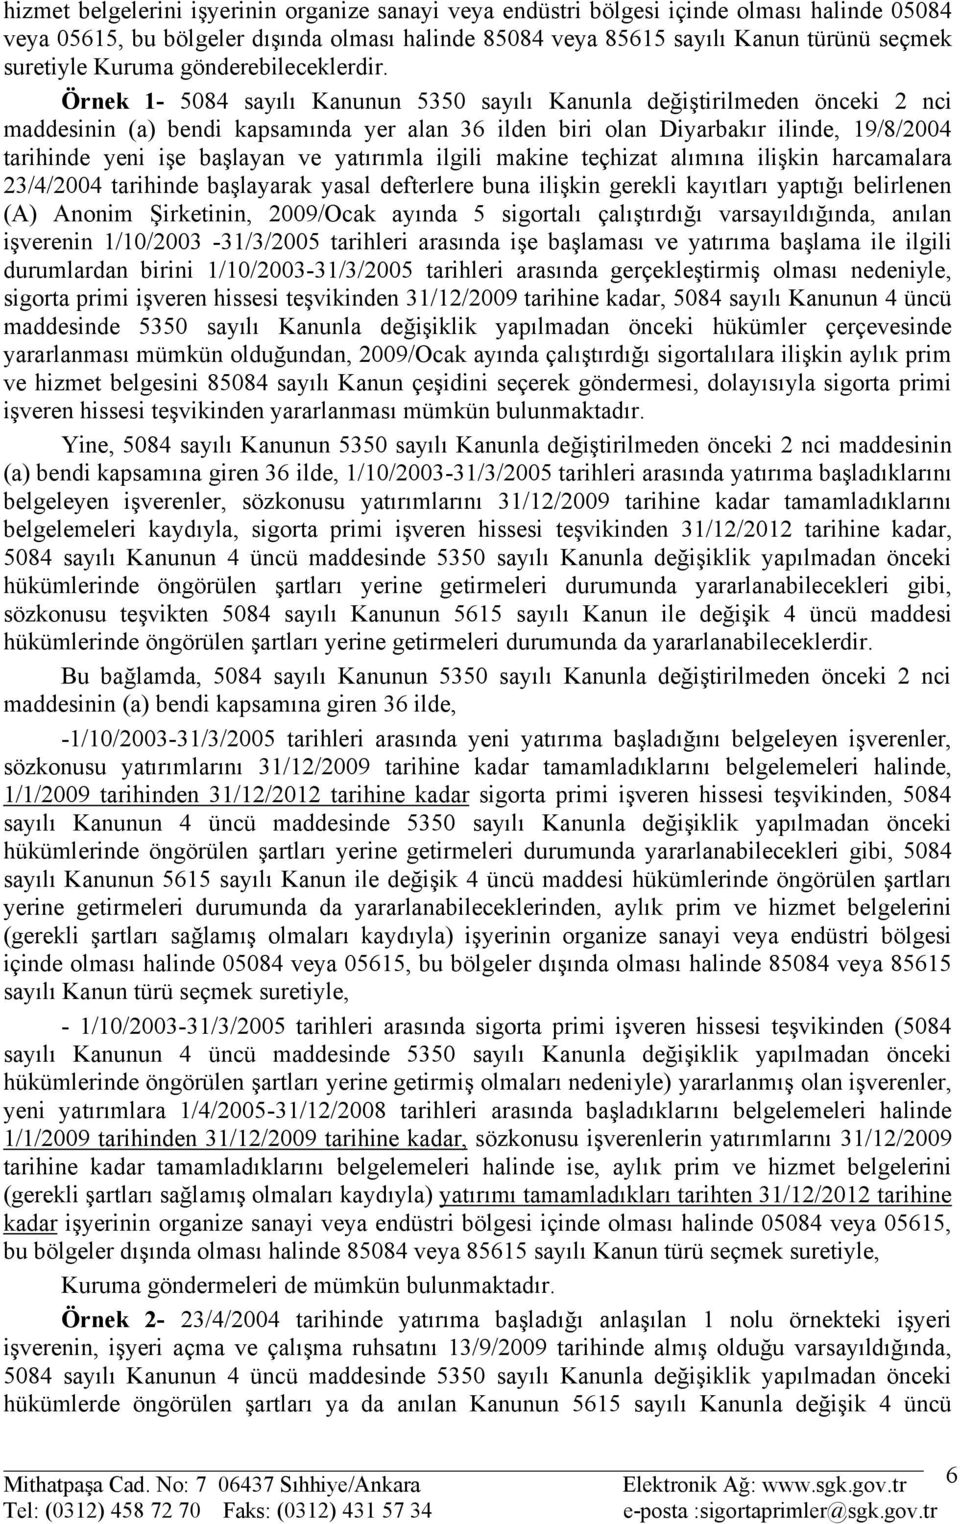 Örnek 1-5084 sayılı Kanunun 5350 sayılı Kanunla değiştirilmeden önceki 2 nci maddesinin (a) bendi kapsamında yer alan 36 ilden biri olan Diyarbakır ilinde, 19/8/2004 tarihinde yeni işe başlayan ve